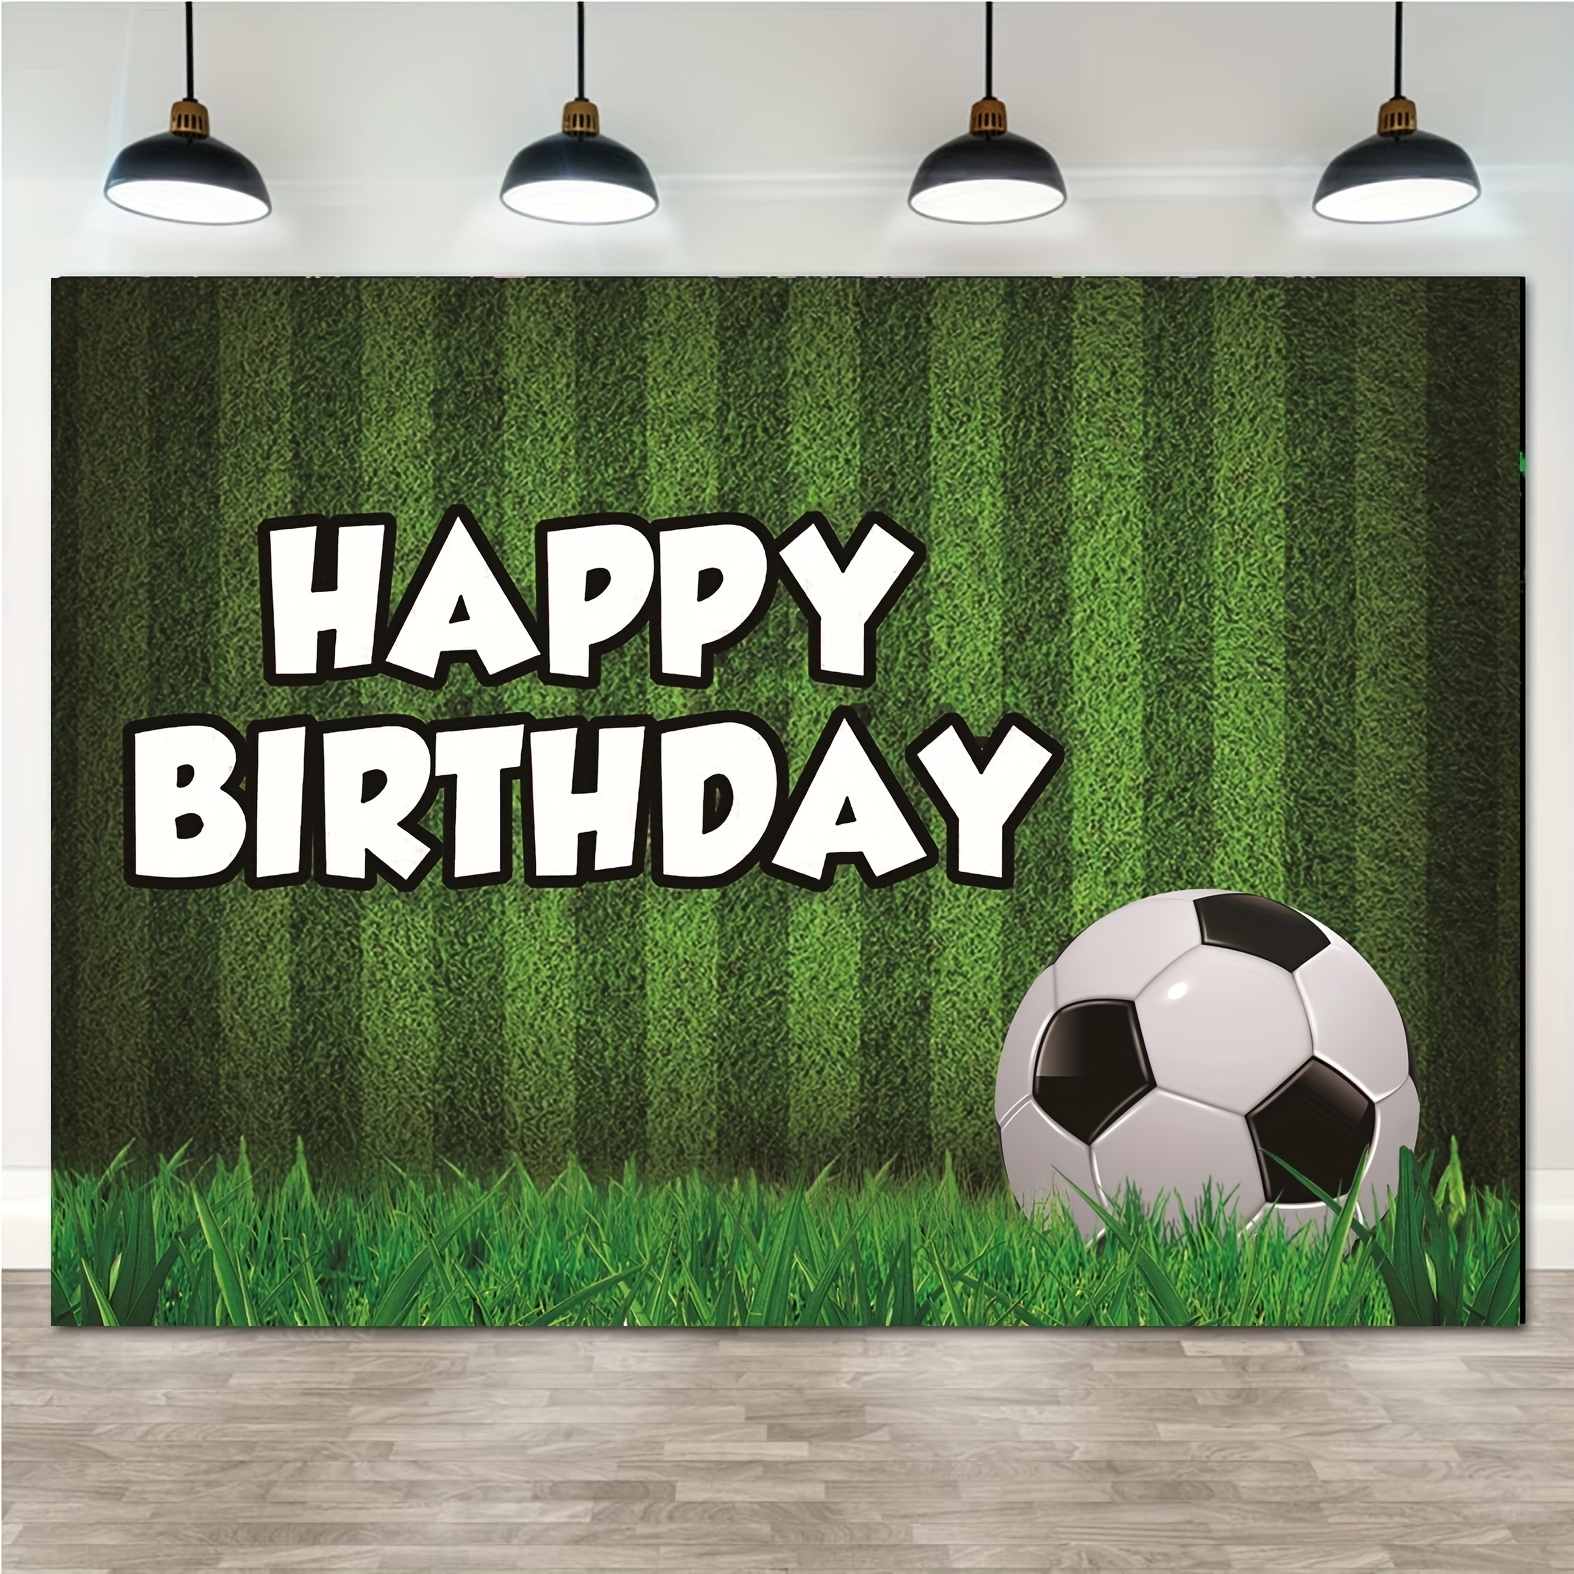 Fondo de la fiesta de cumpleaños de fútbol, fondo de la fiesta de cumpleaños  del fútbol Campo de fútbol Fondo de la foto Decoración del tema deportivo  de fútbol 5x3ft